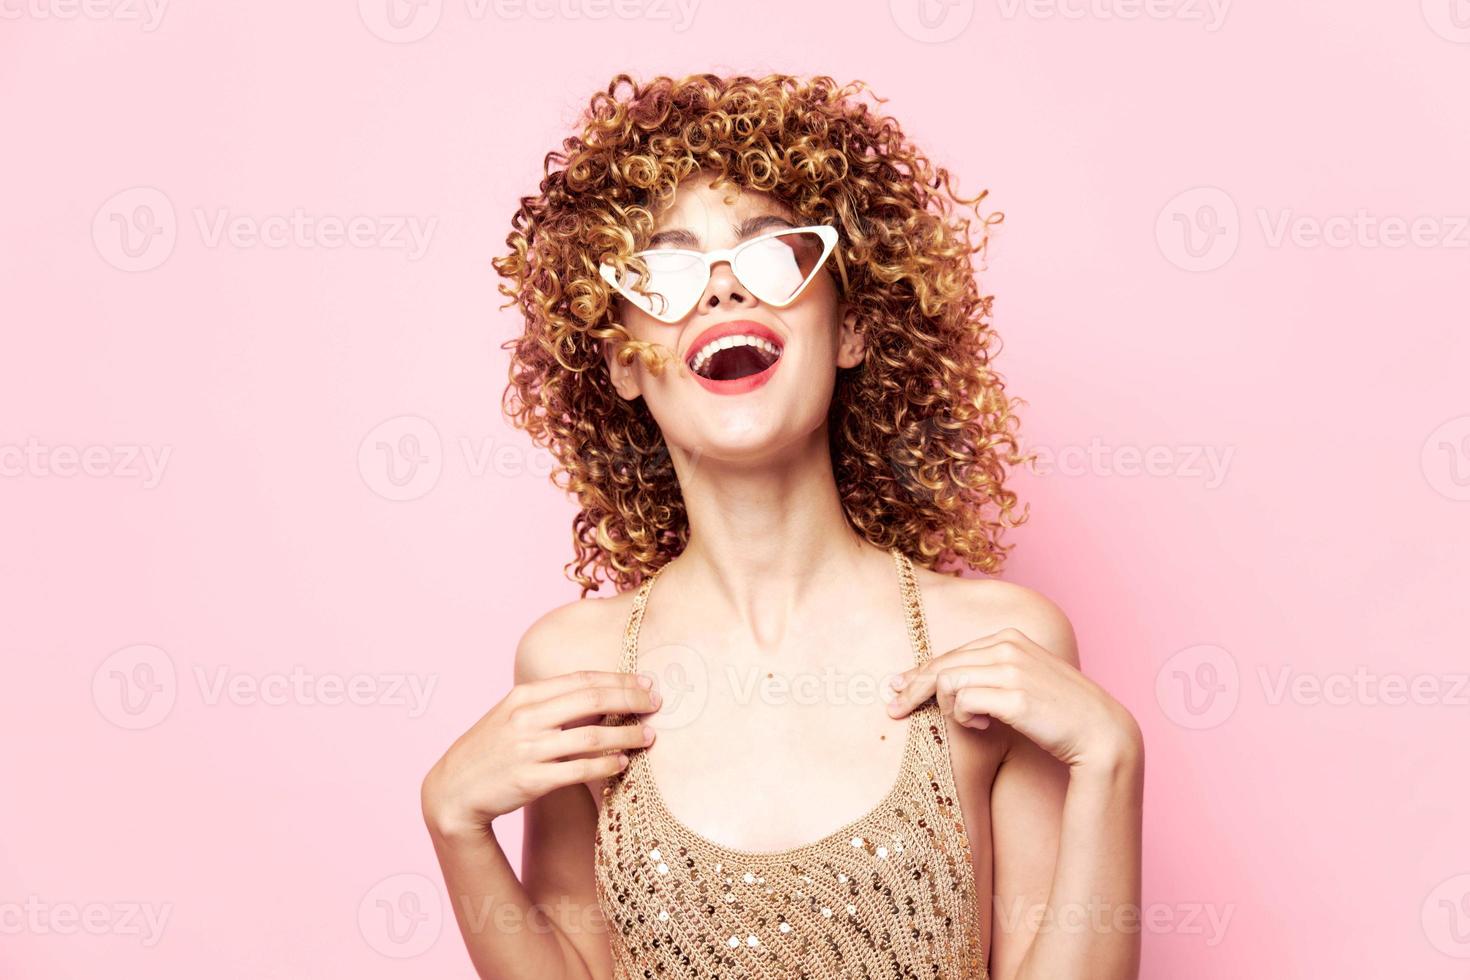 senhora óculos com branco aros rir alegria festa moda roupas Rosa fundo cópia de espaço foto